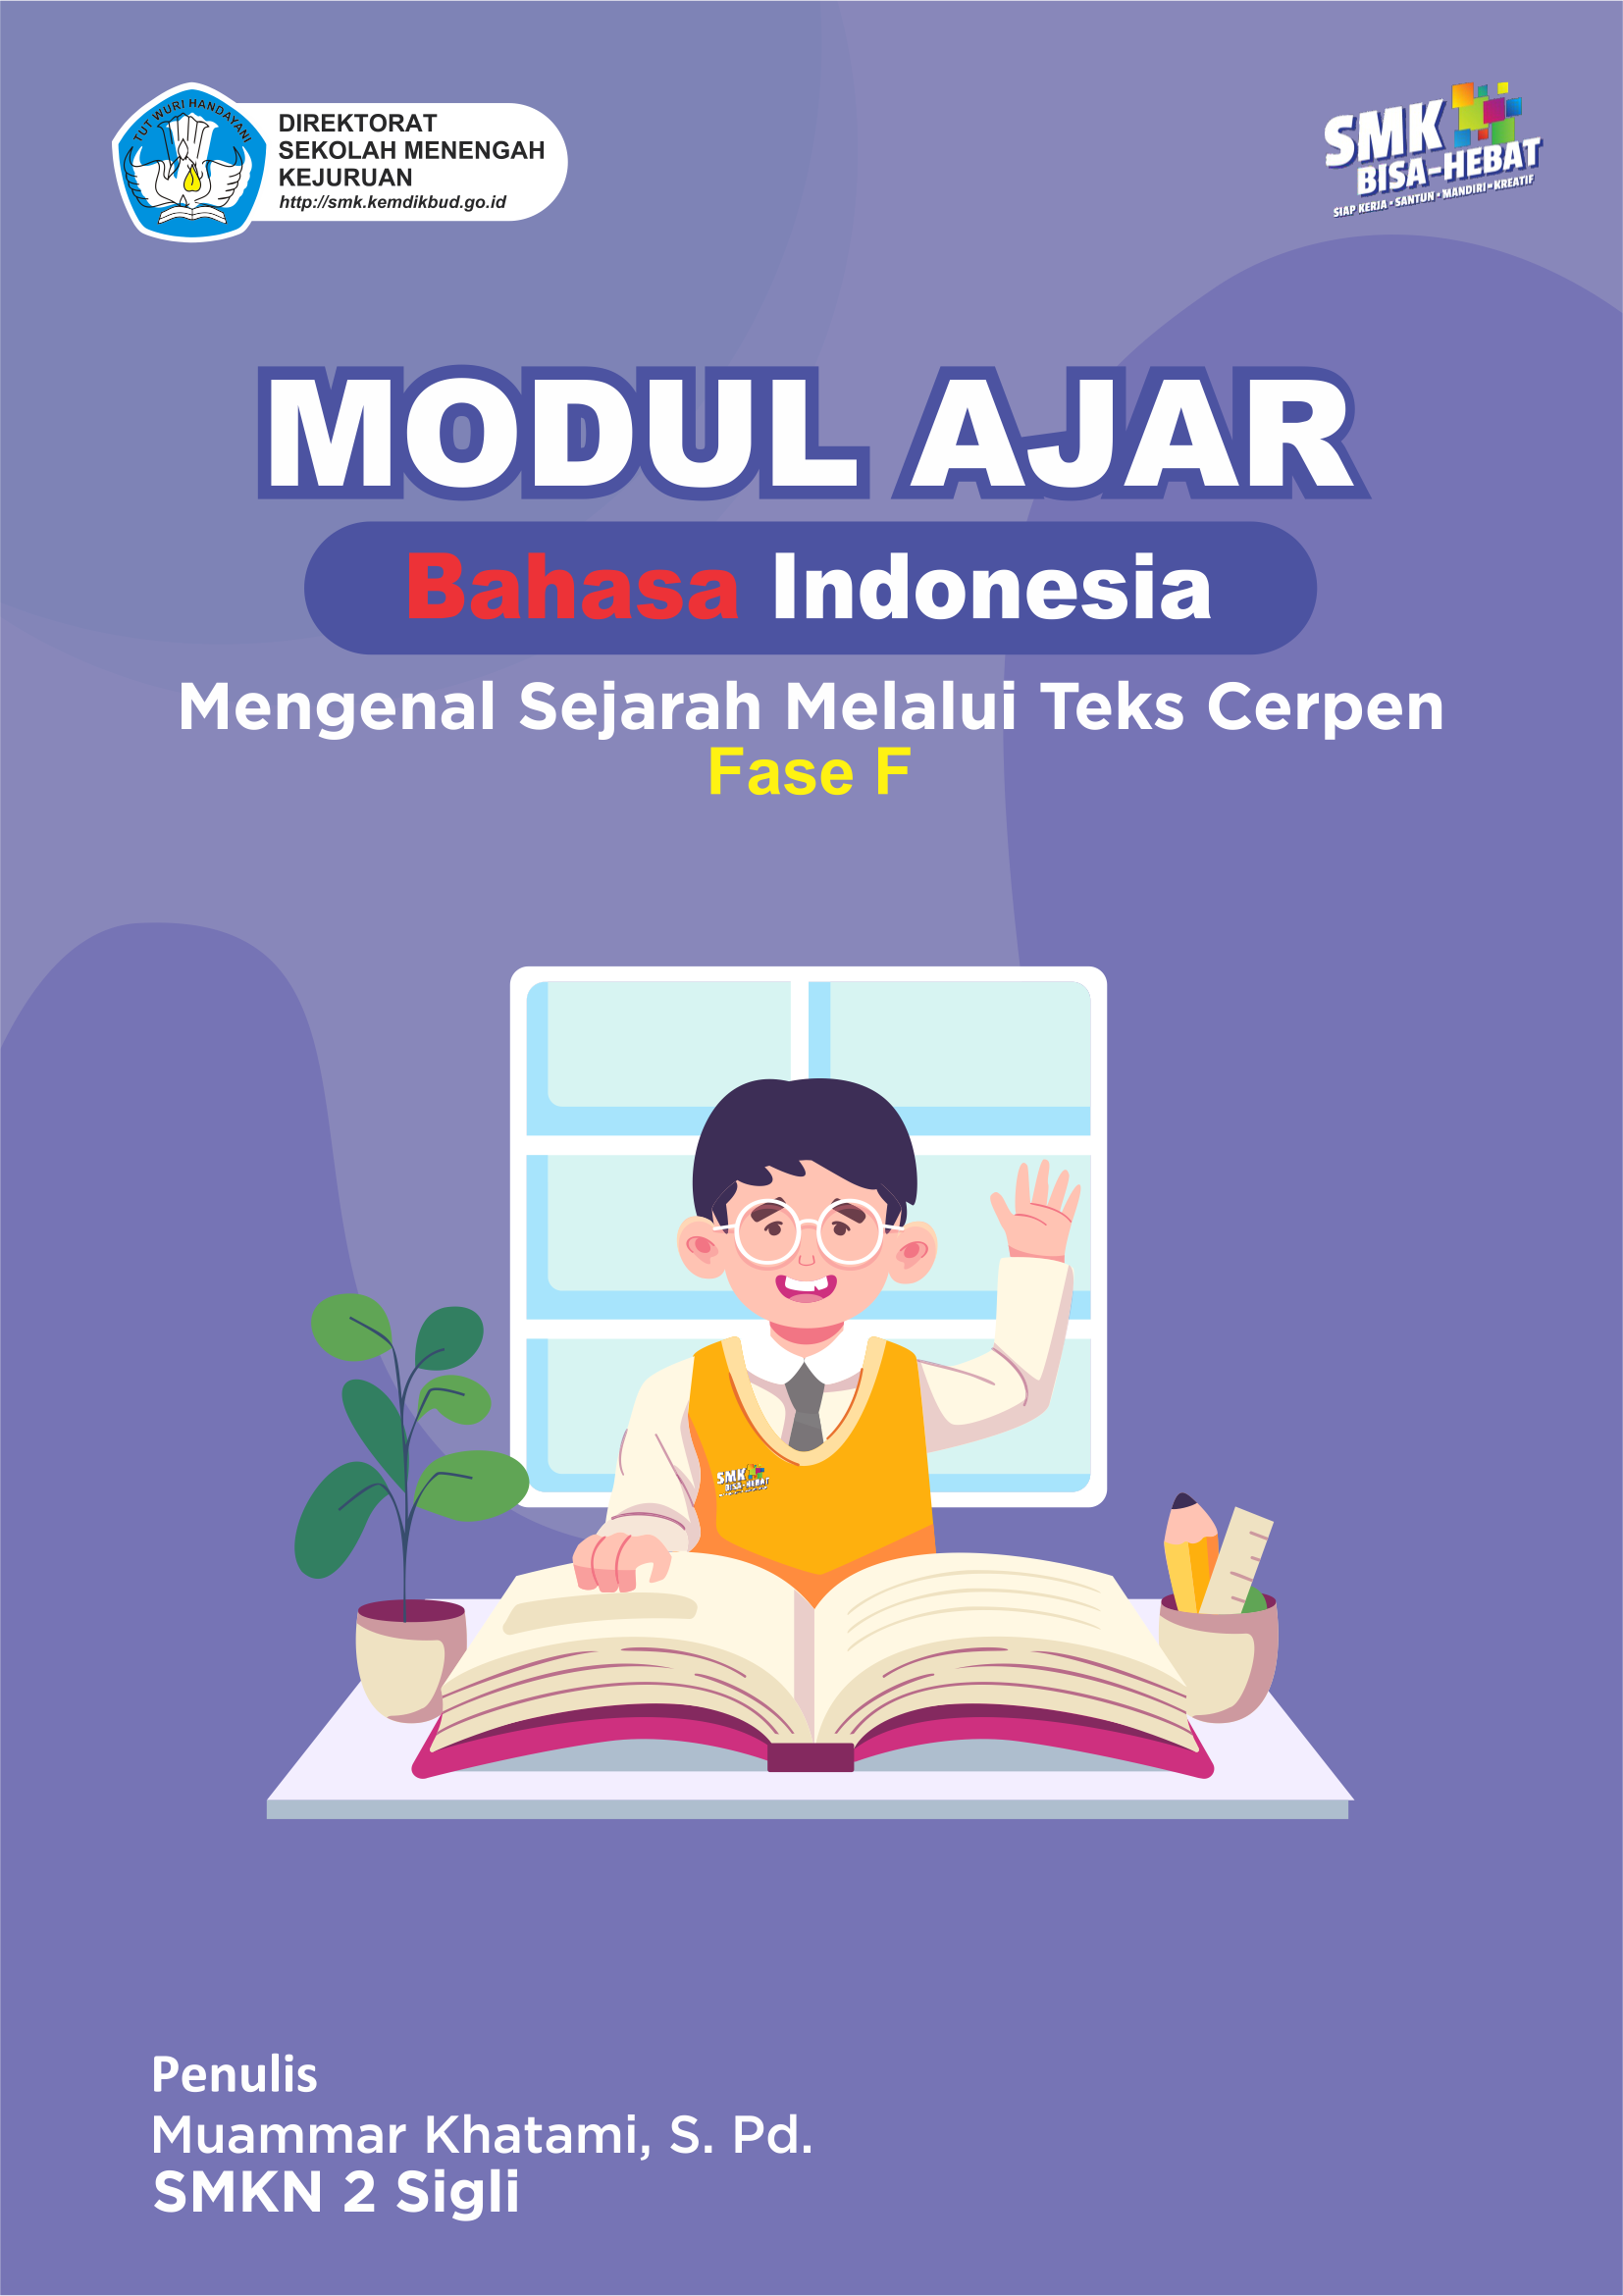 Mengenal Sejarah Melalui Teks Cerpen - Download Modul Ajar Bahasa Indonesia